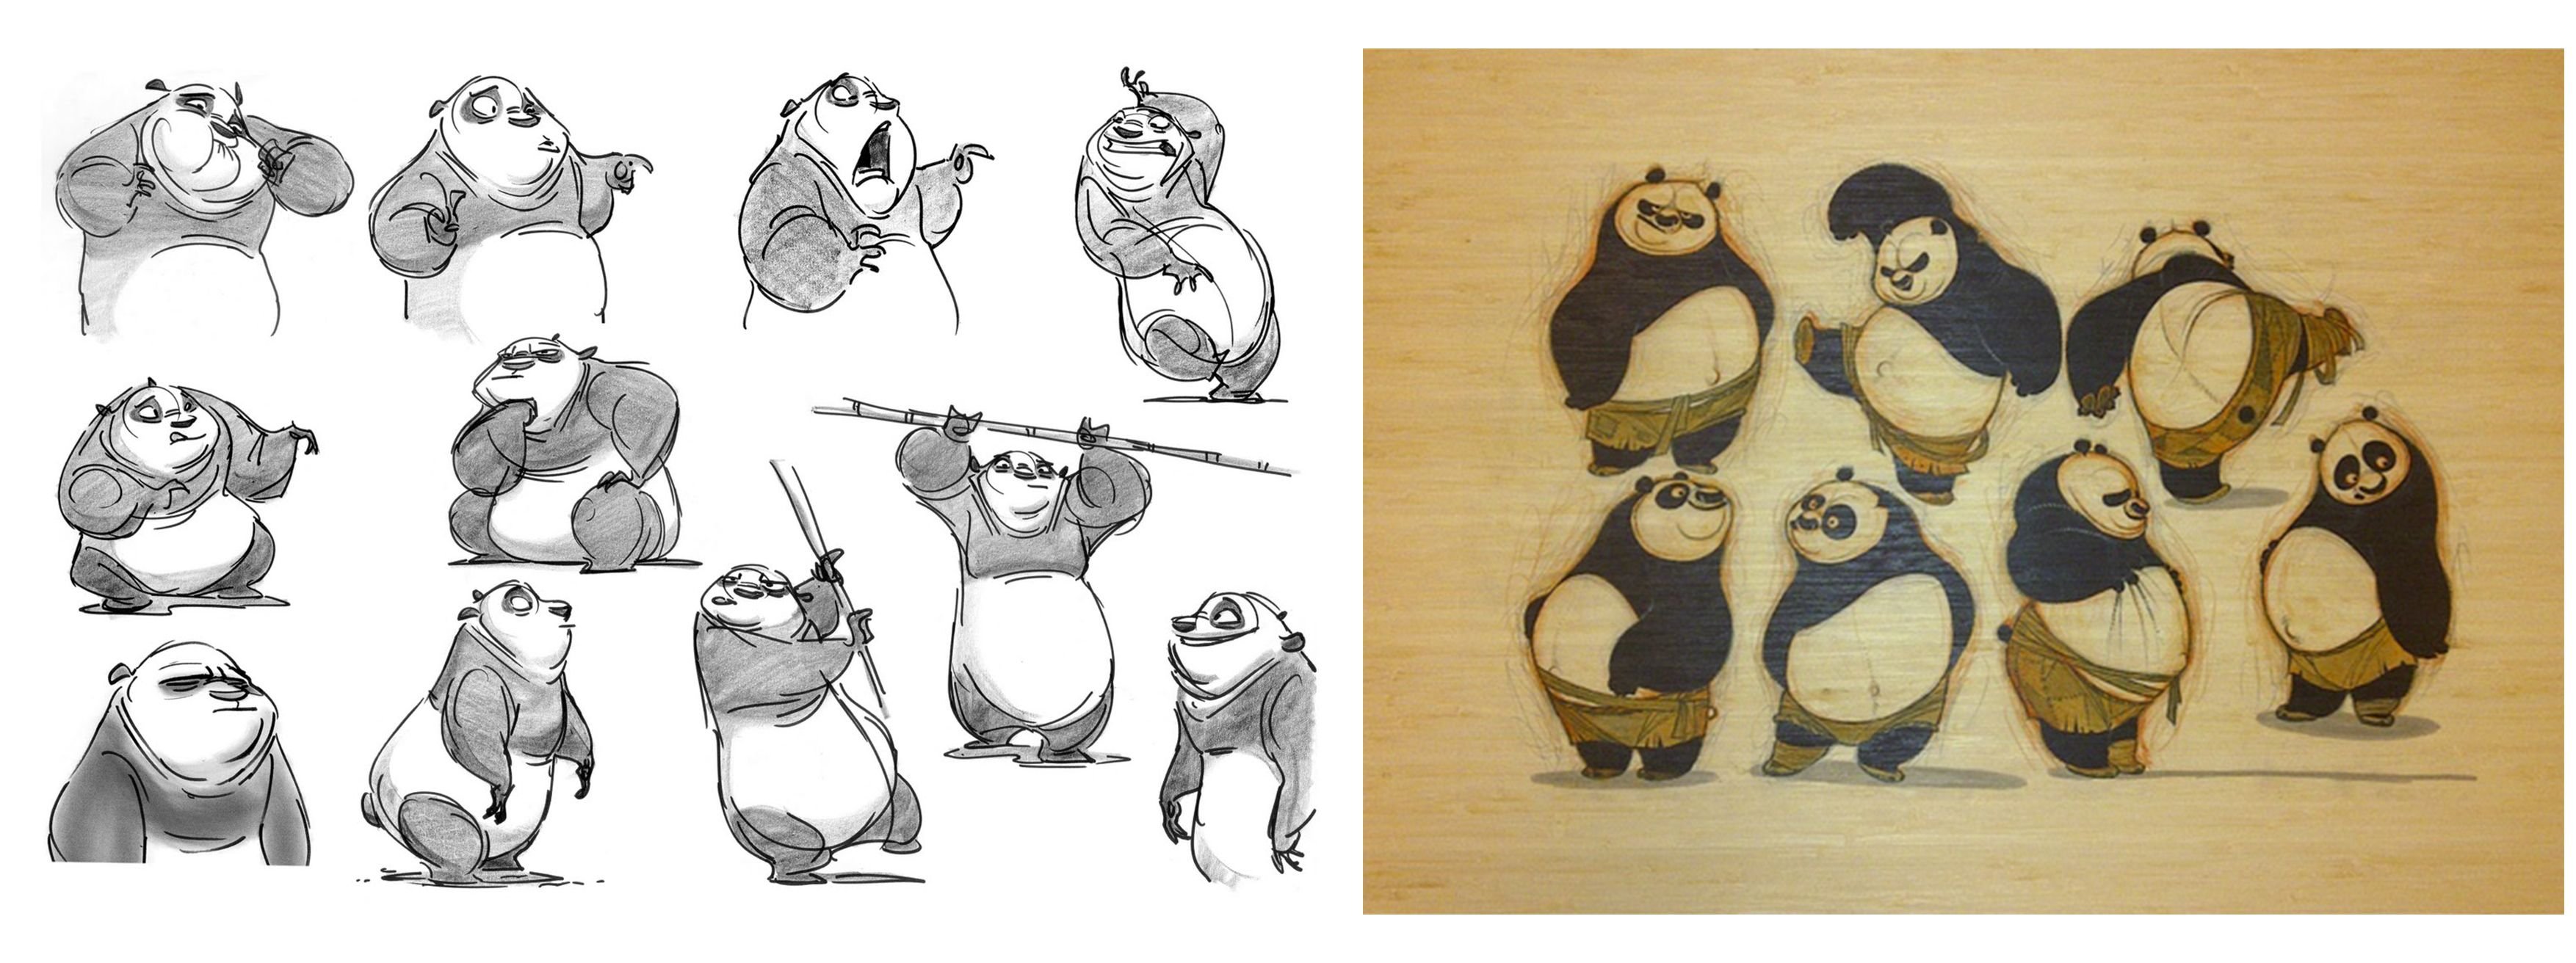 концепт арты по кунг фу панда